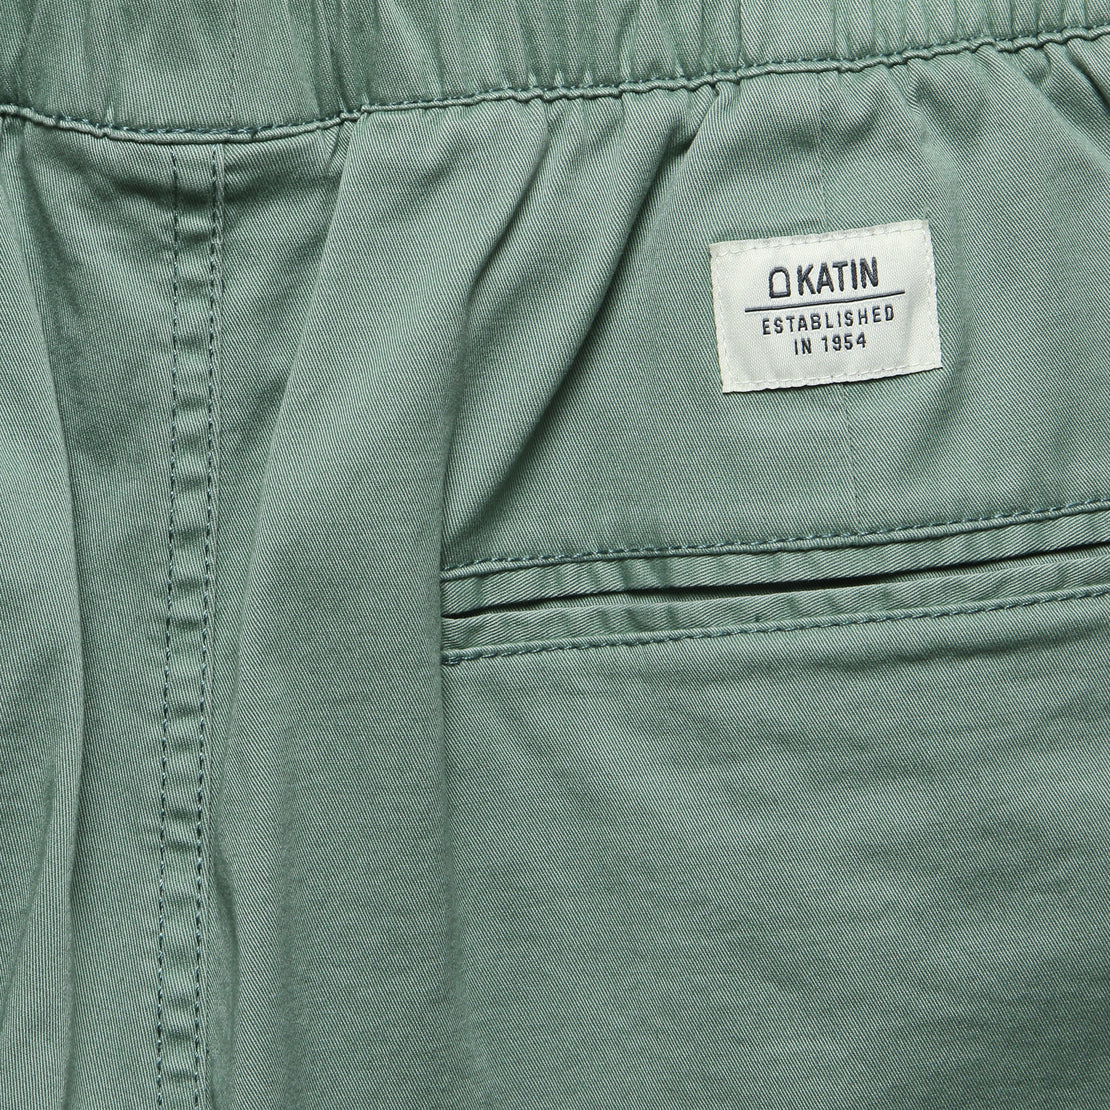 Patio Short - Gray/Green - Katin - STAG Provisions - Shorts - Lounge